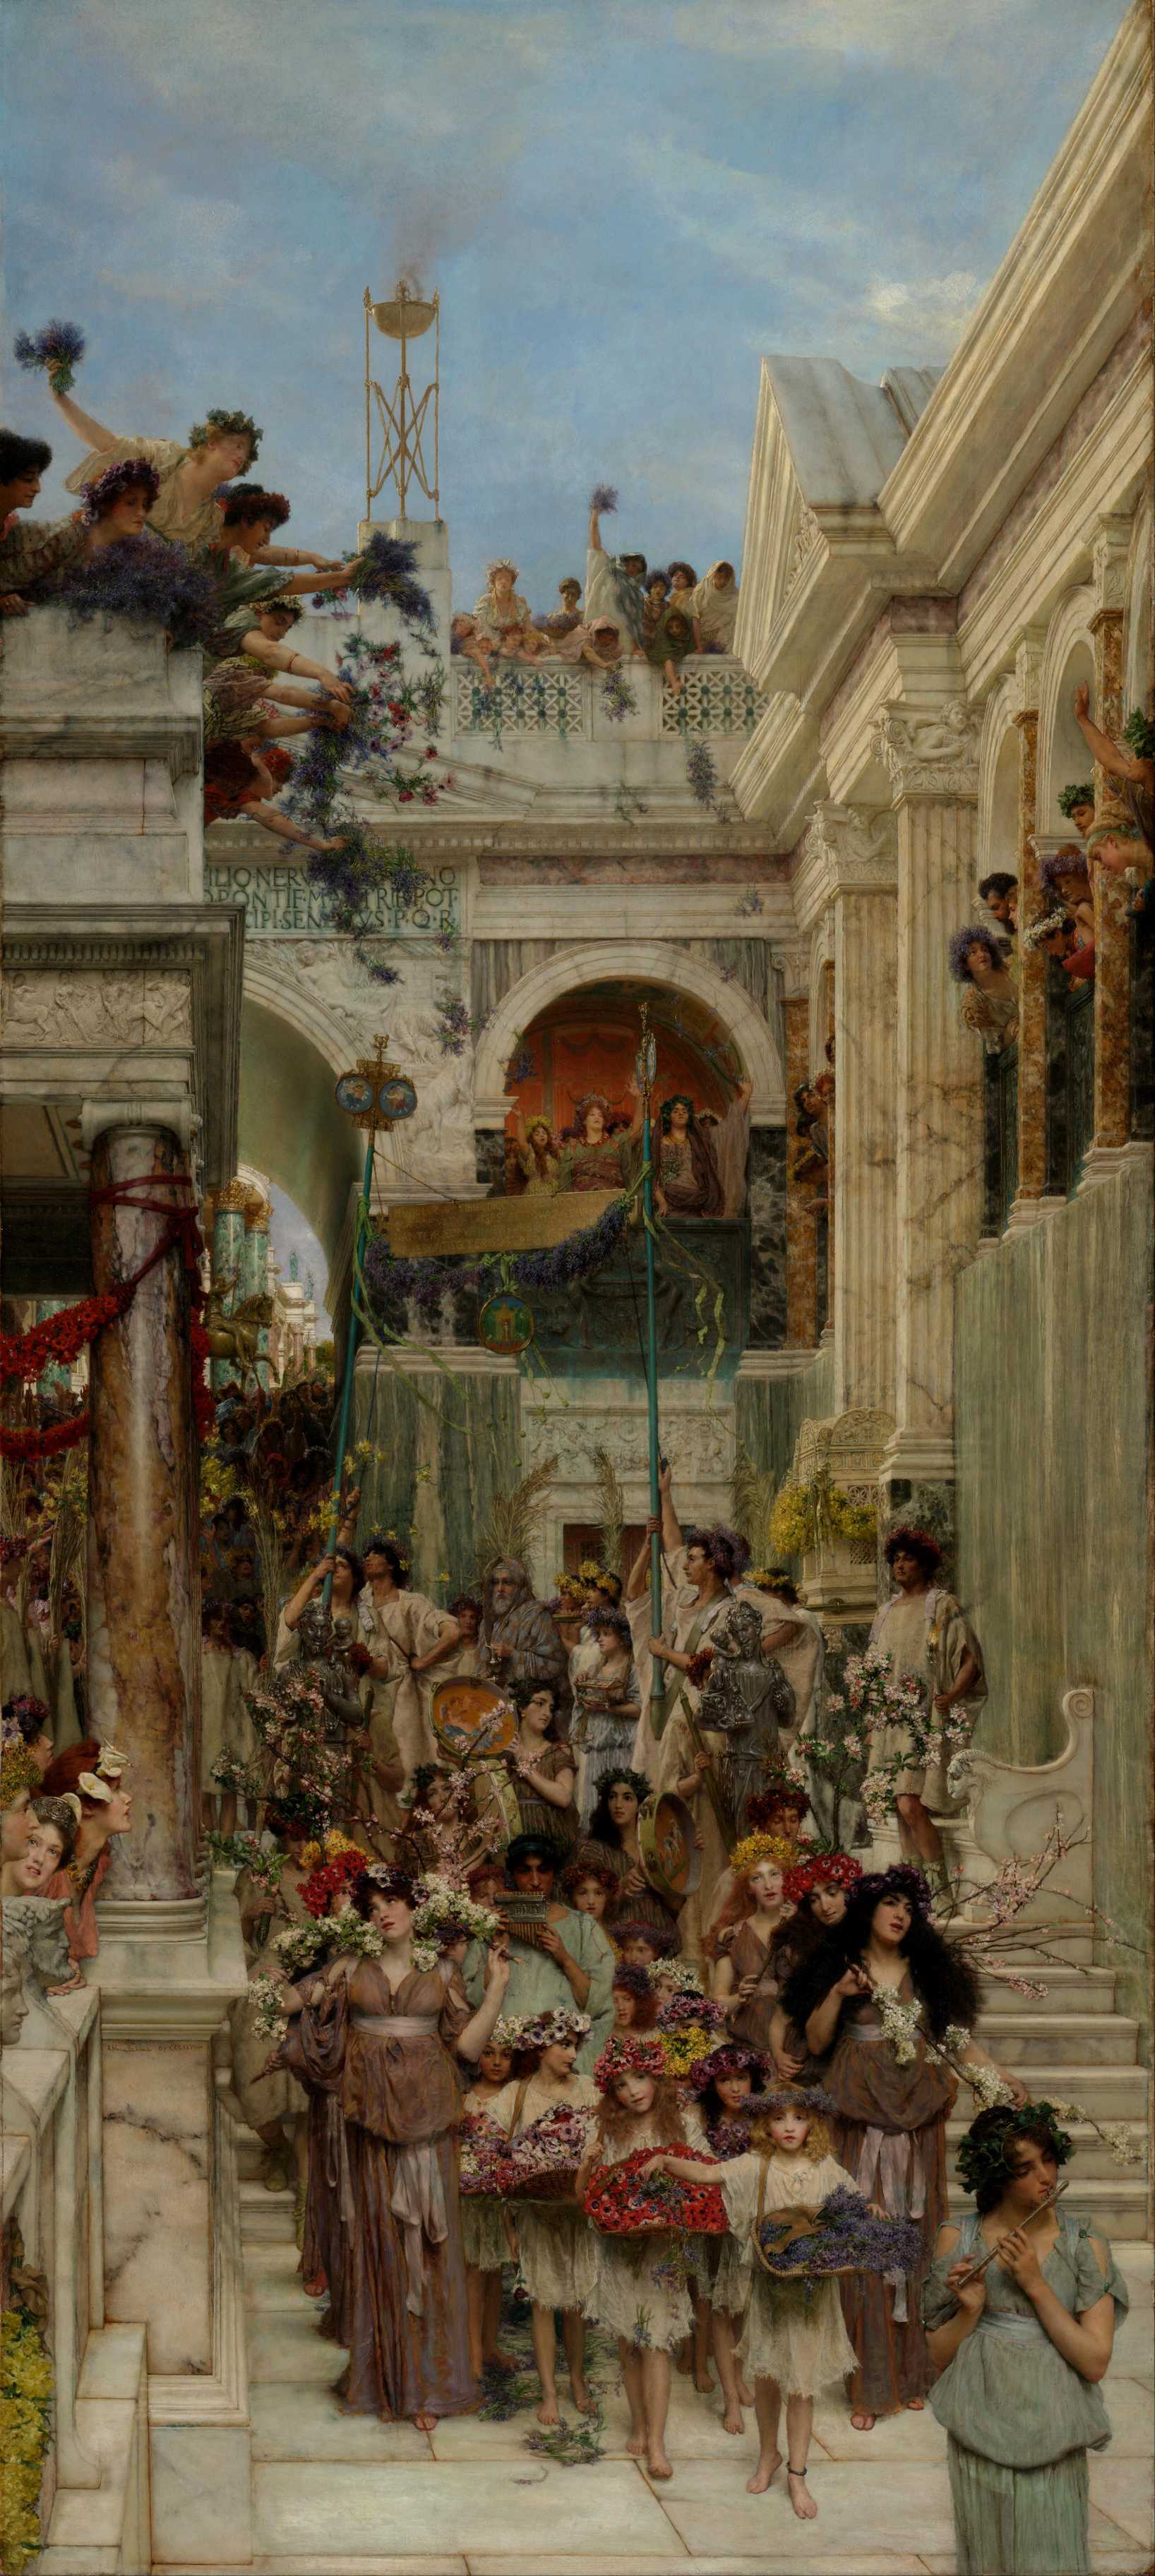 0006_劳伦斯阿尔玛达德玛维多利亚油画埃及希腊人物素材高清图TIF格式_-阿尔玛